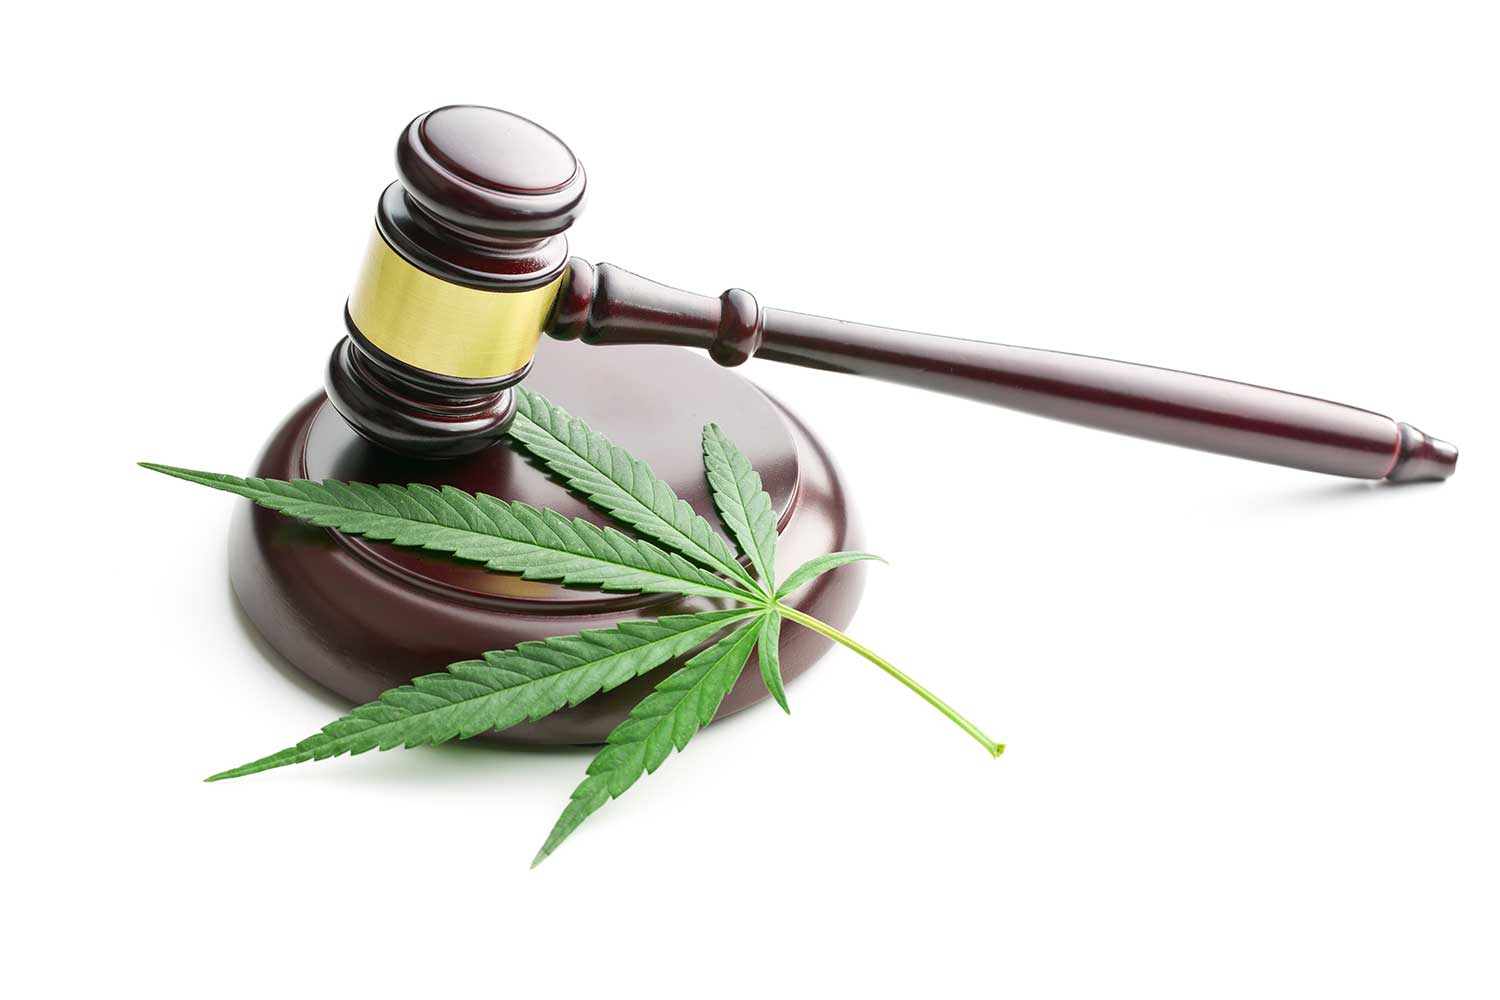 A marijuana leaf shown alongside a judge's gavel.